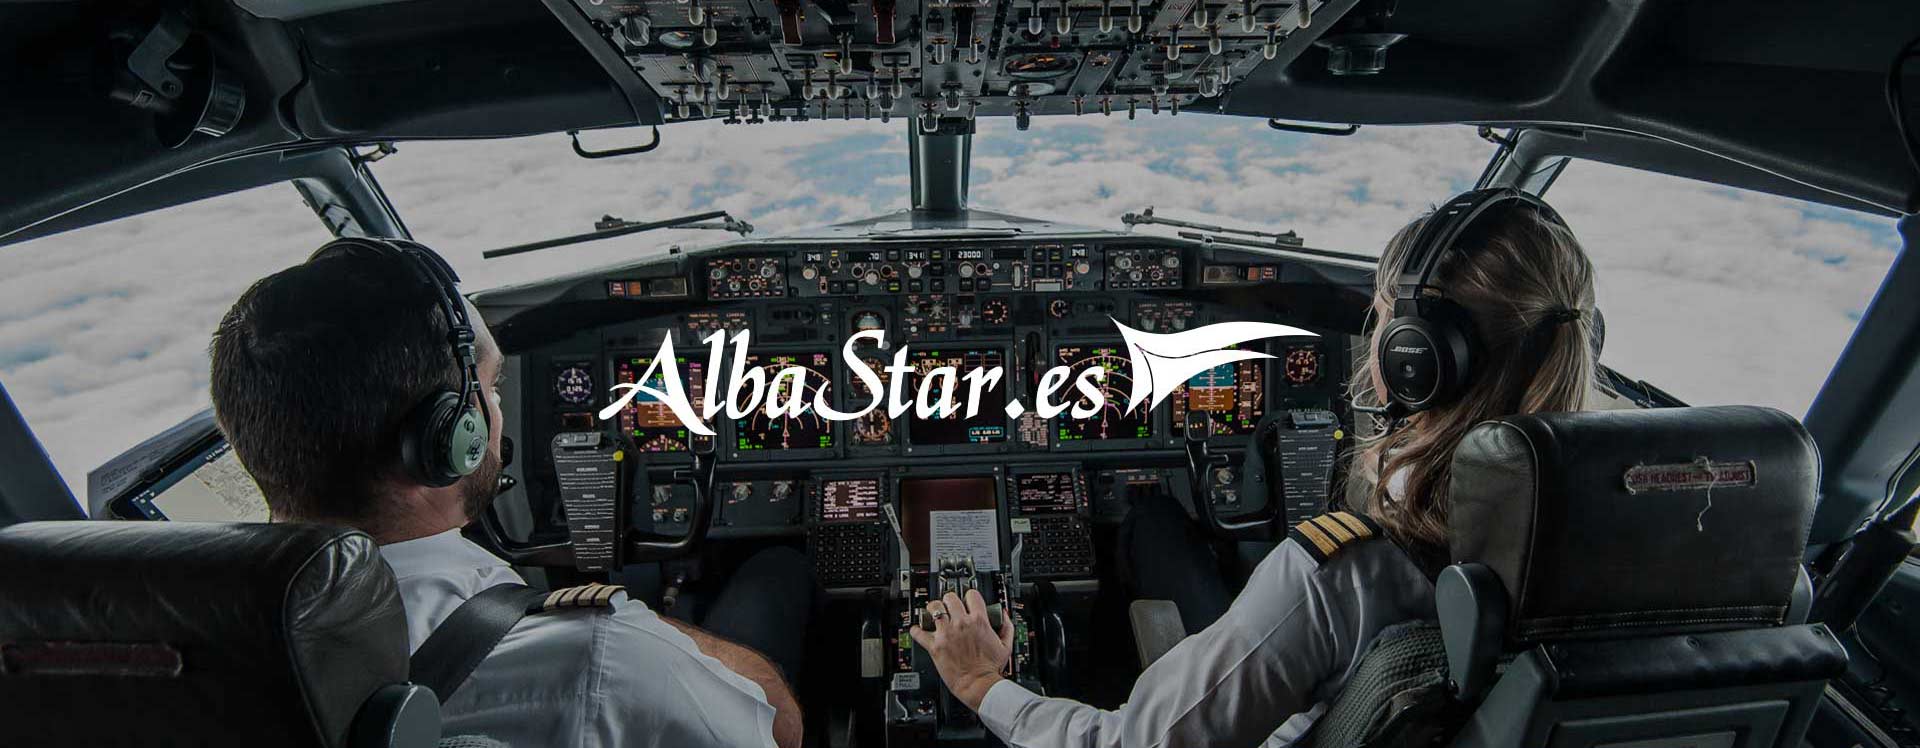 Albastar - Compagnia aerea | Case history Unique